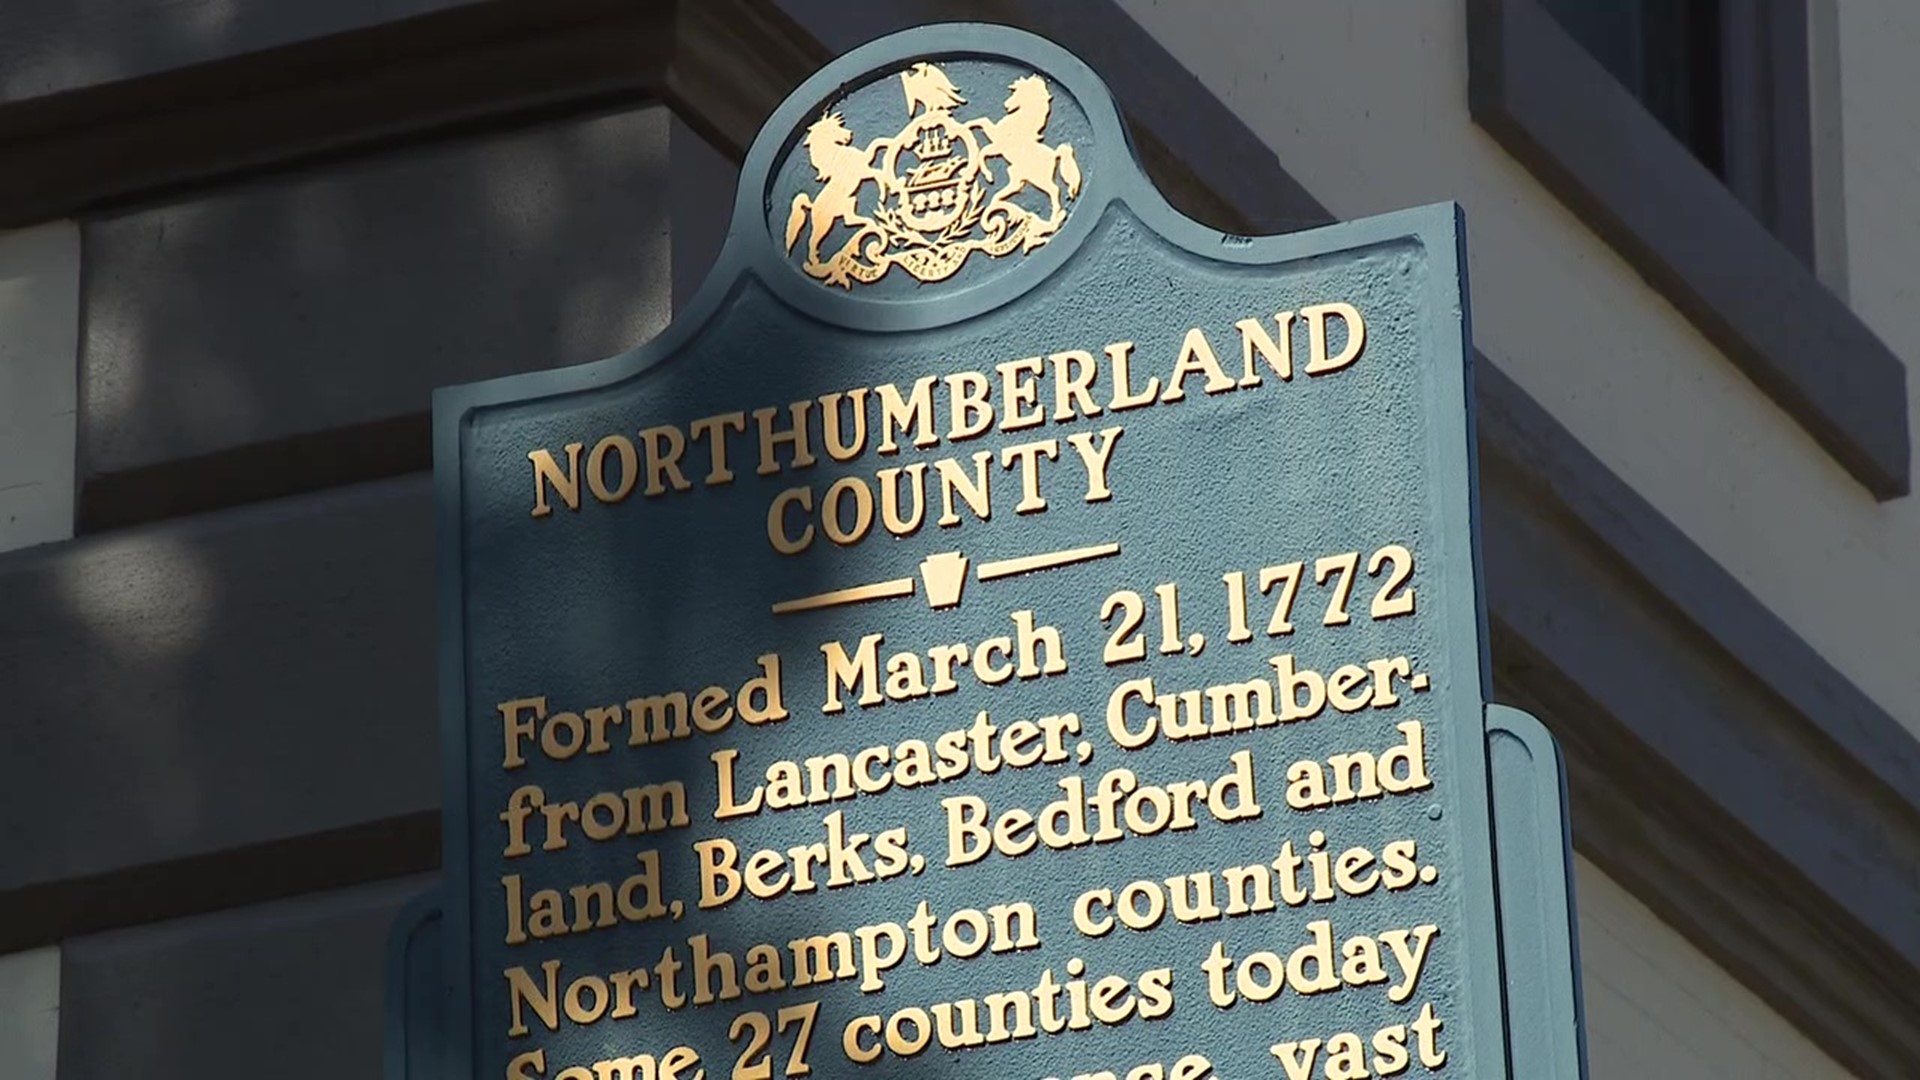 Northumberland County marked a big milestone on Monday, turning 250.